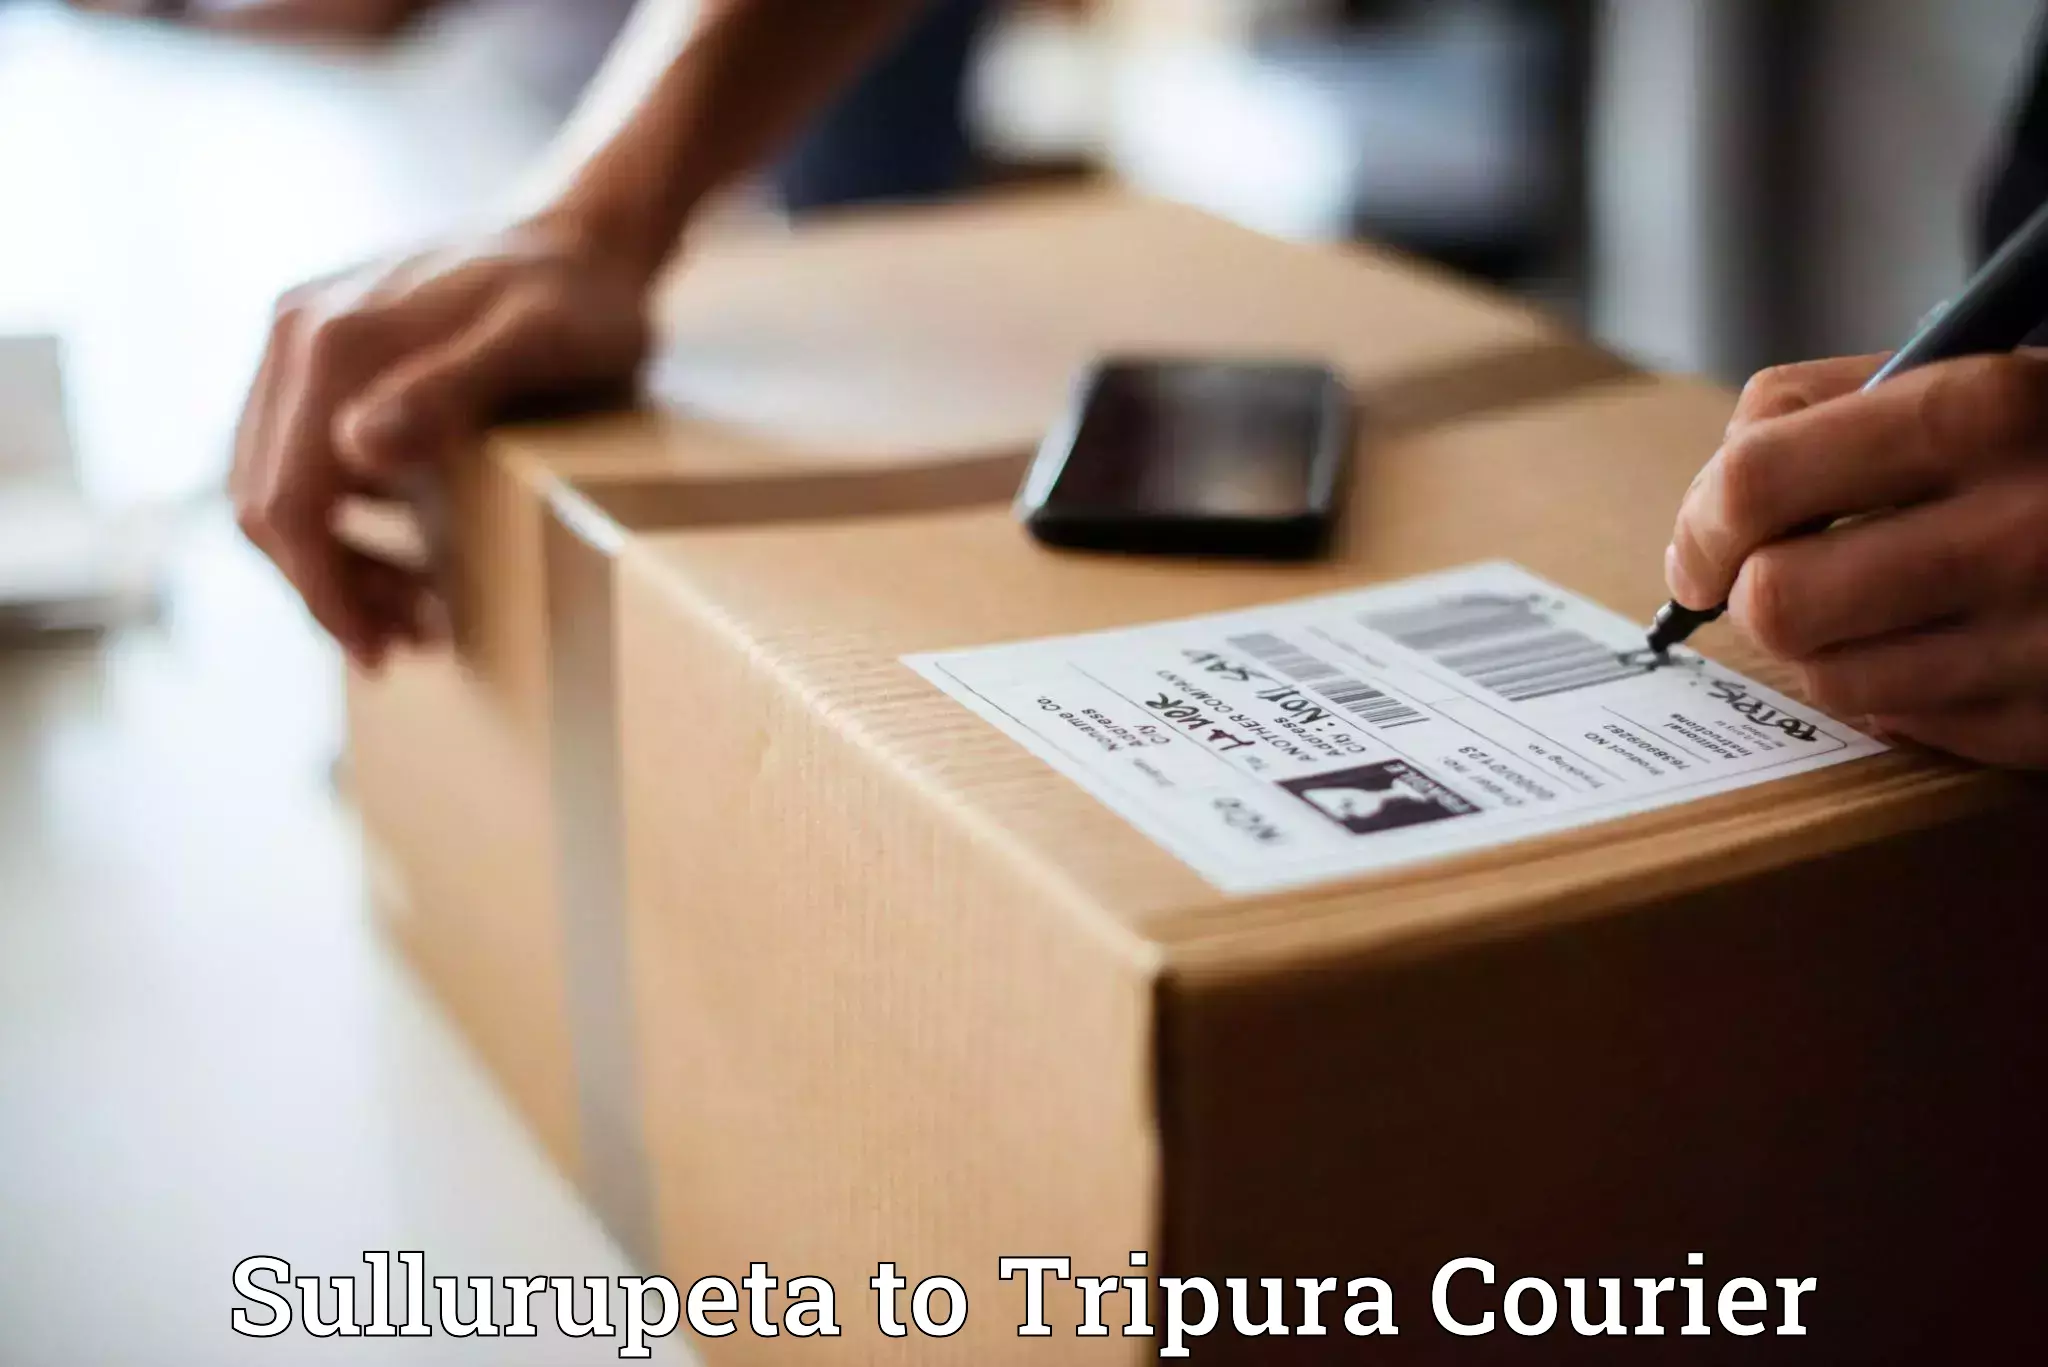 Local delivery service Sullurupeta to Sonamura